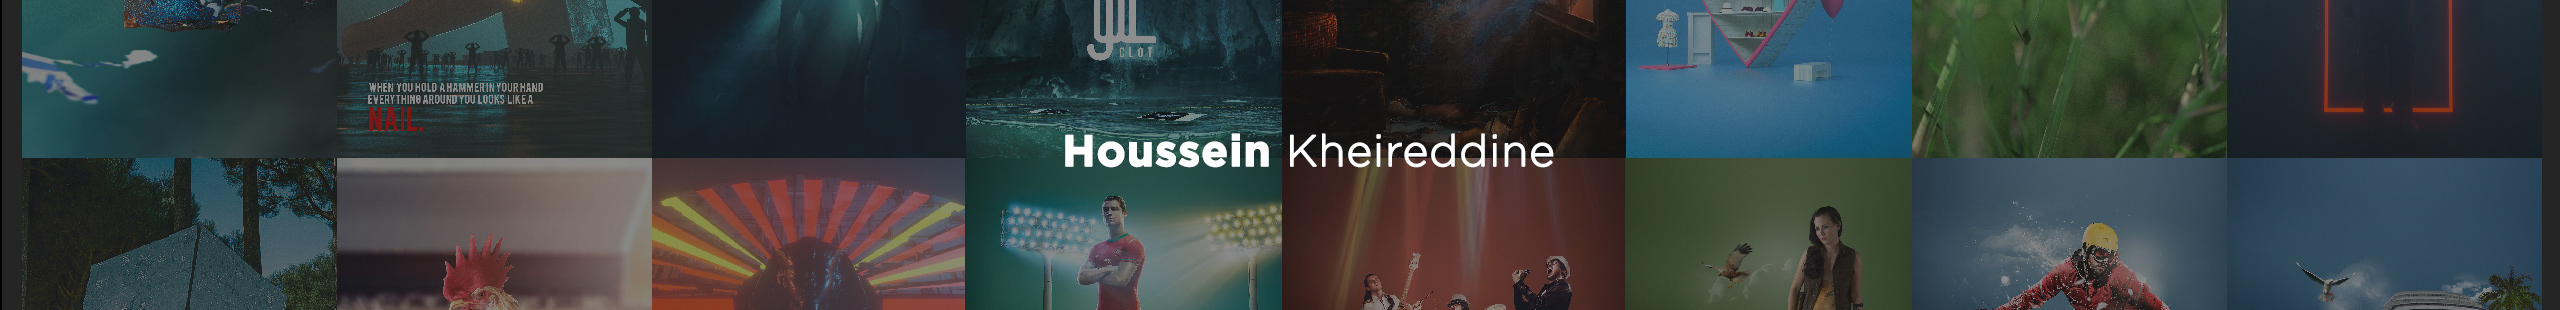 Hussein Kheireddeen のプロファイルバナー